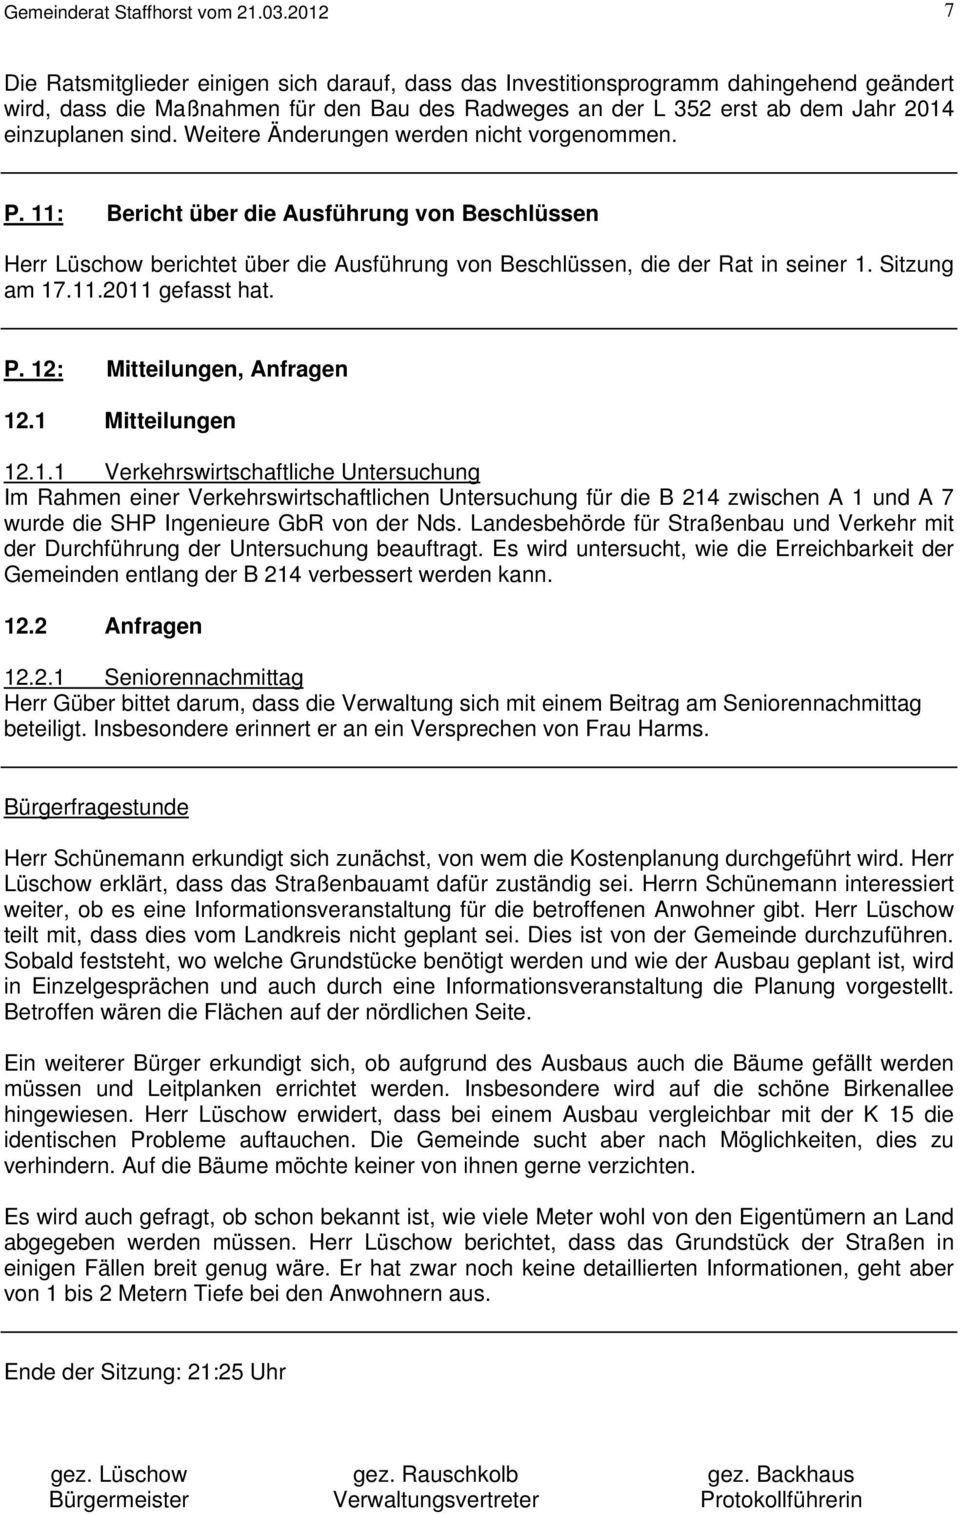 Weitere Änderungen werden nicht vorgenommen. P. 11: Bericht über die Ausführung von Beschlüssen Herr Lüschow berichtet über die Ausführung von Beschlüssen, die der Rat in seiner 1. Sitzung am 17.11.2011 gefasst hat.